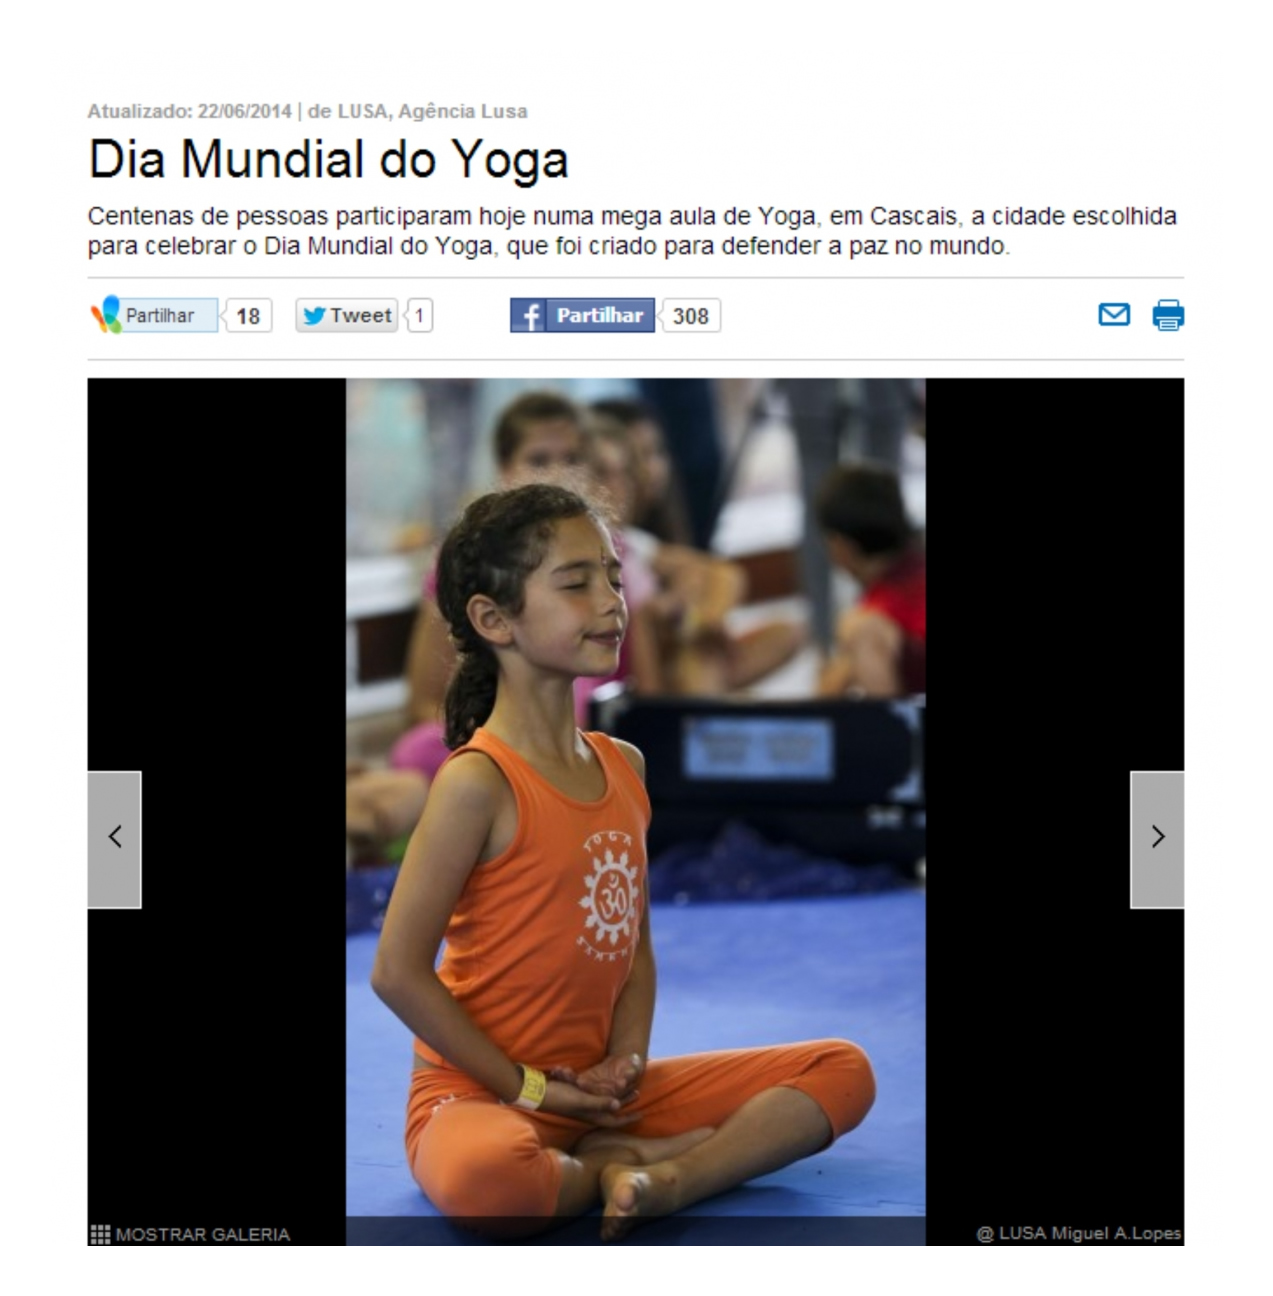 Prensa - Día Internacional del Yoga 2014